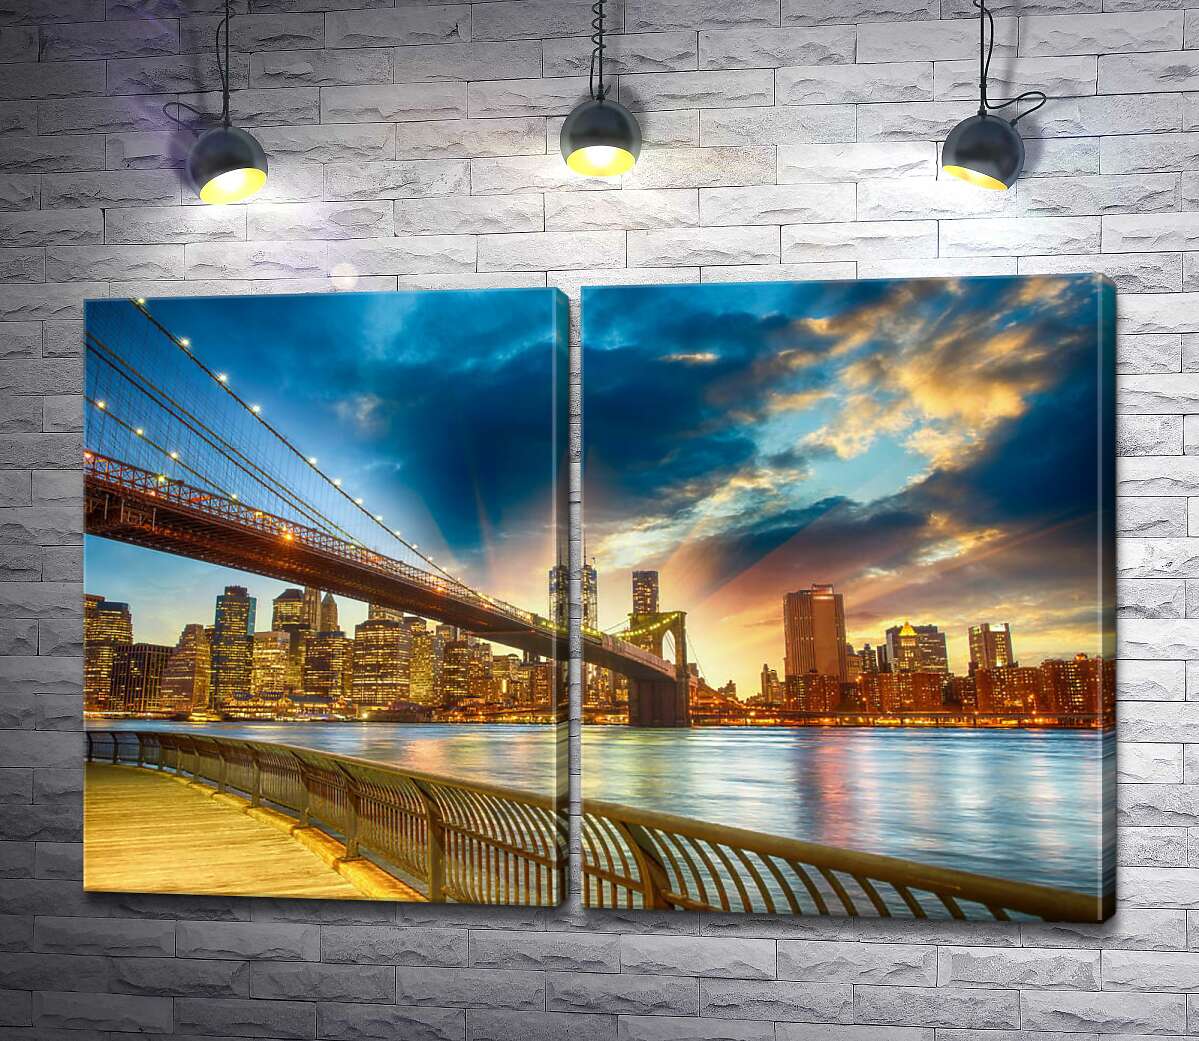 модульная картина Бруклинский мост (Brooklyn Bridge) ведет к многолюдному мегаполису